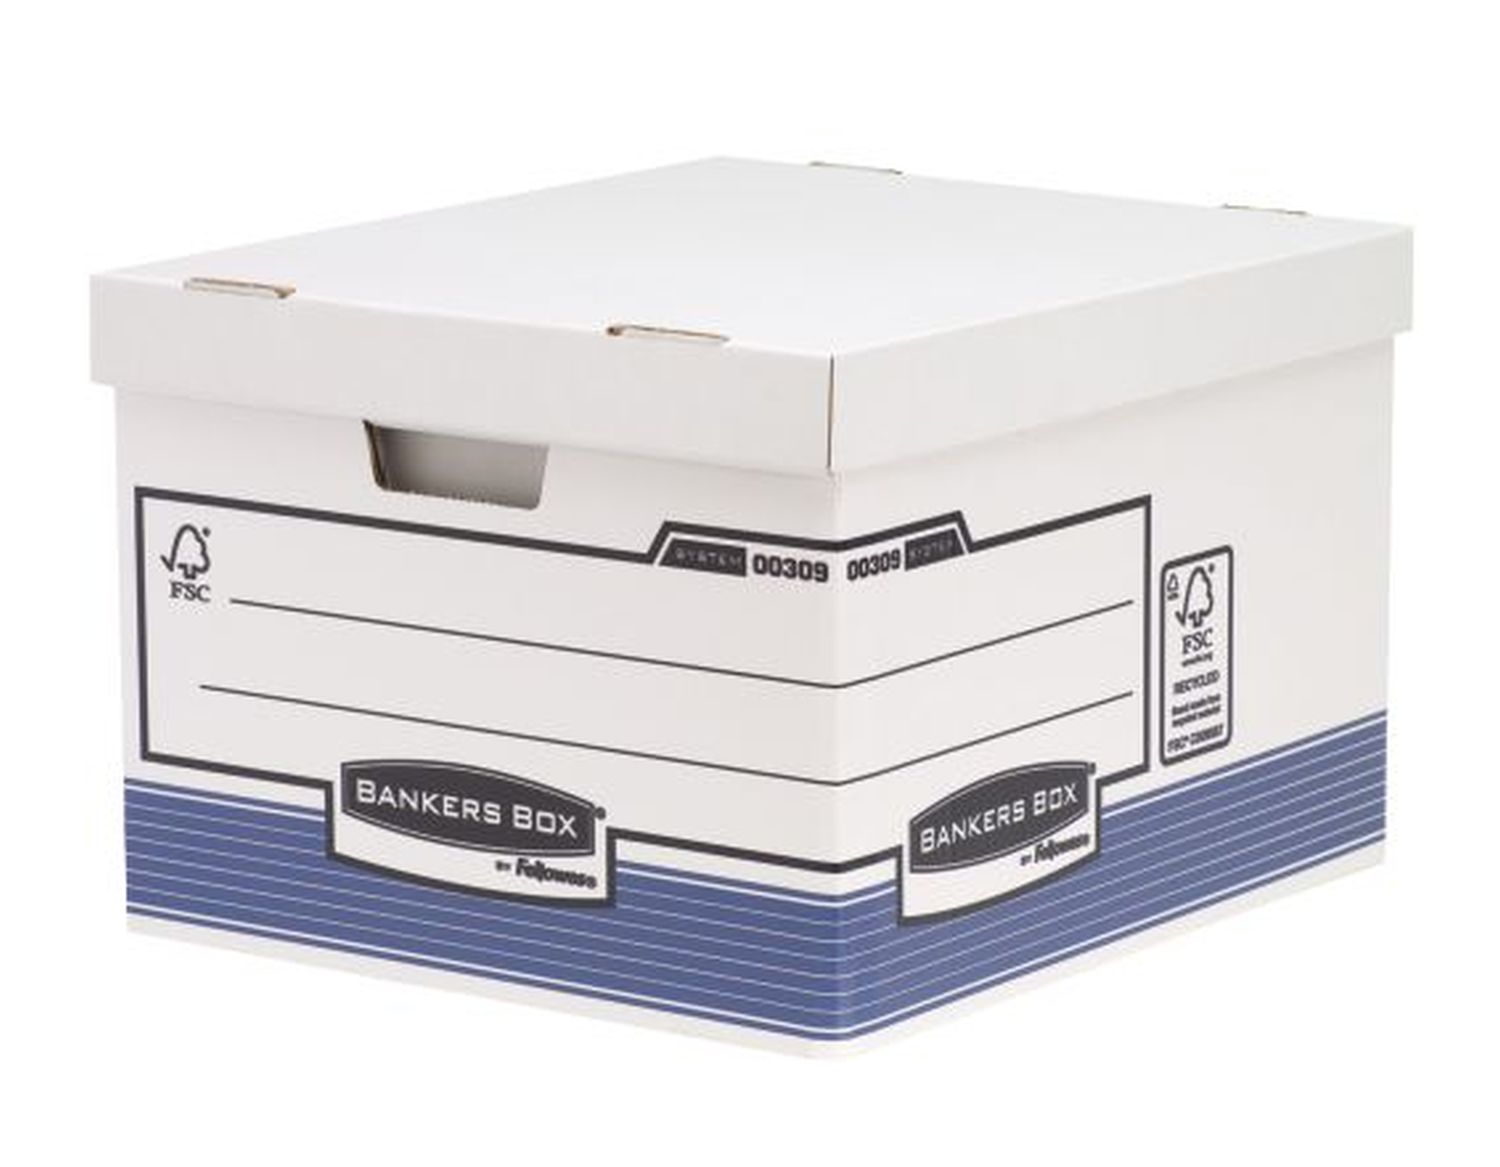 Archivcontainer Bankers Box® System 0030901 mit Deckel für Ordner und Archivschachteln, weiß/blau